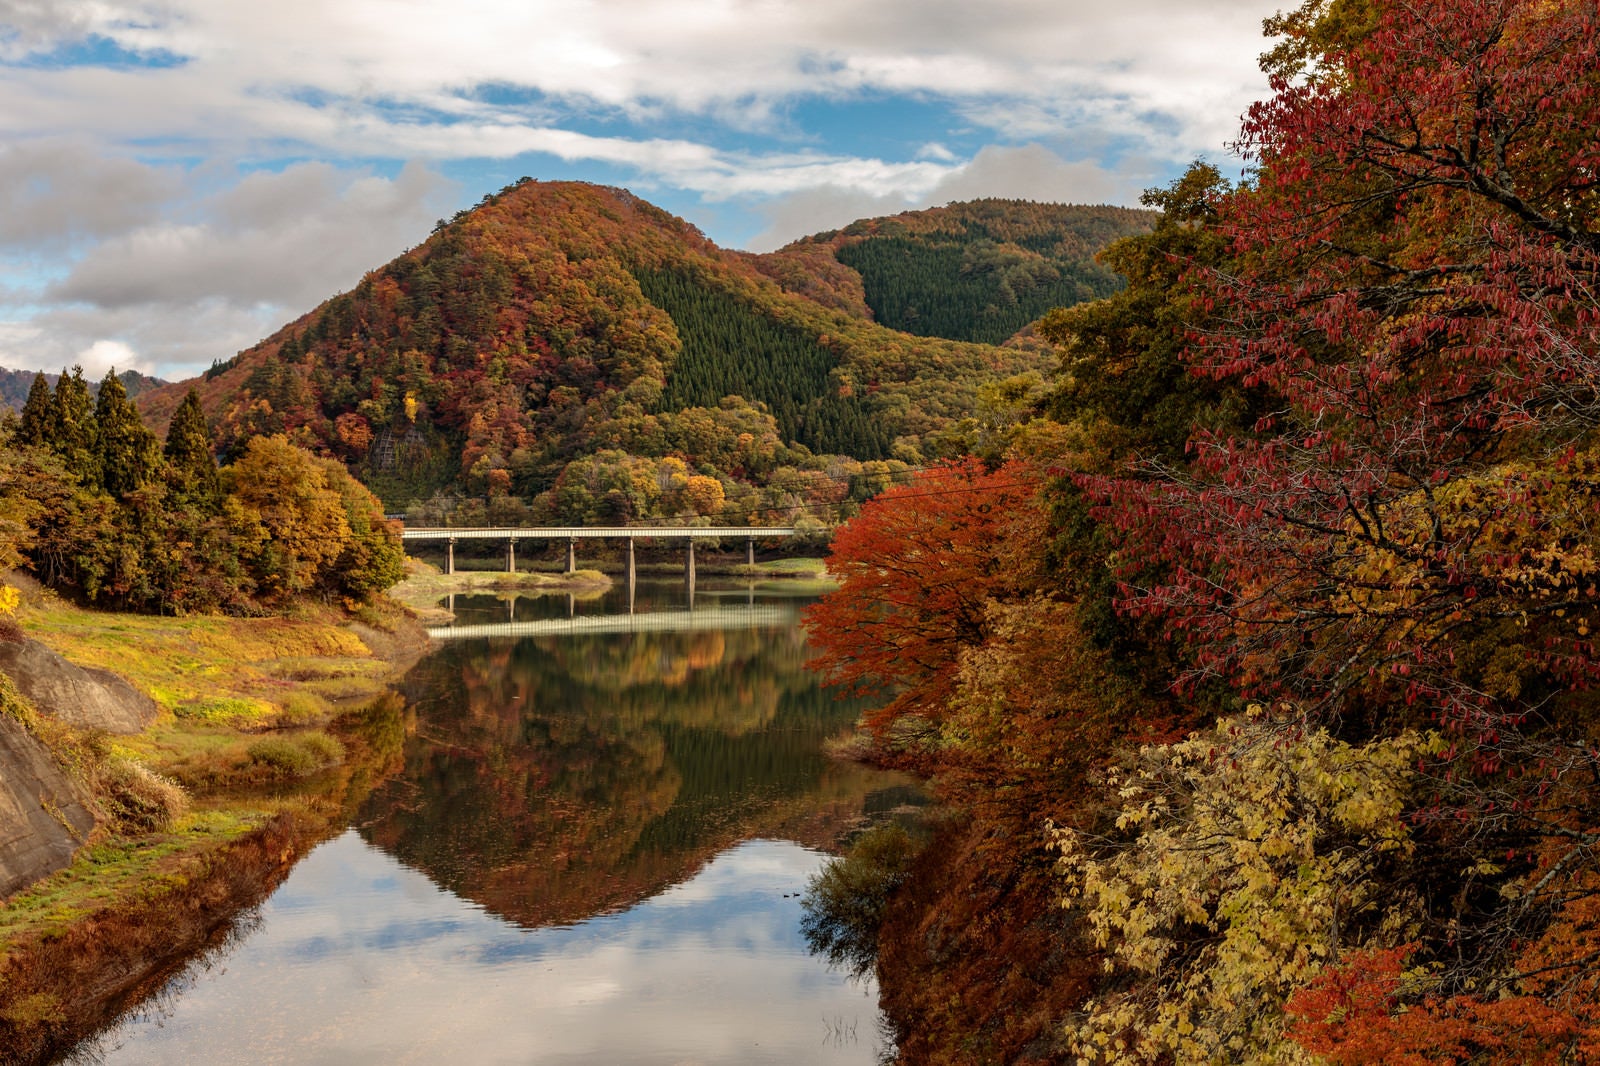 「紅葉した木々とダム湖に反射する山々と鉄橋」の写真